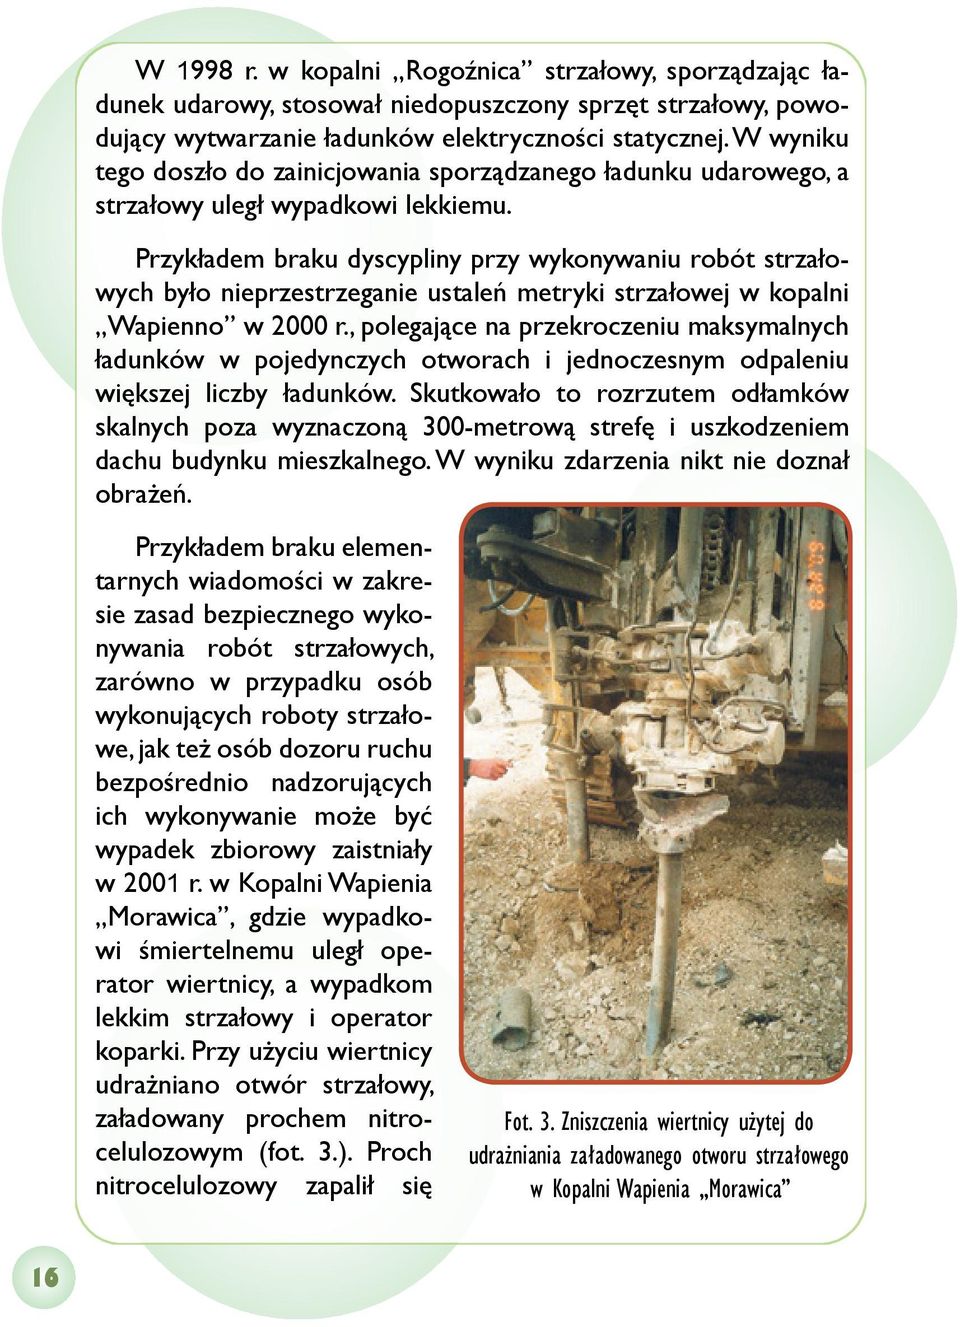 Przykładem braku dyscypliny przy wykonywaniu robót strzałowych było nieprzestrzeganie ustaleń metryki strzałowej w kopalni Wapienno w 2000 r.